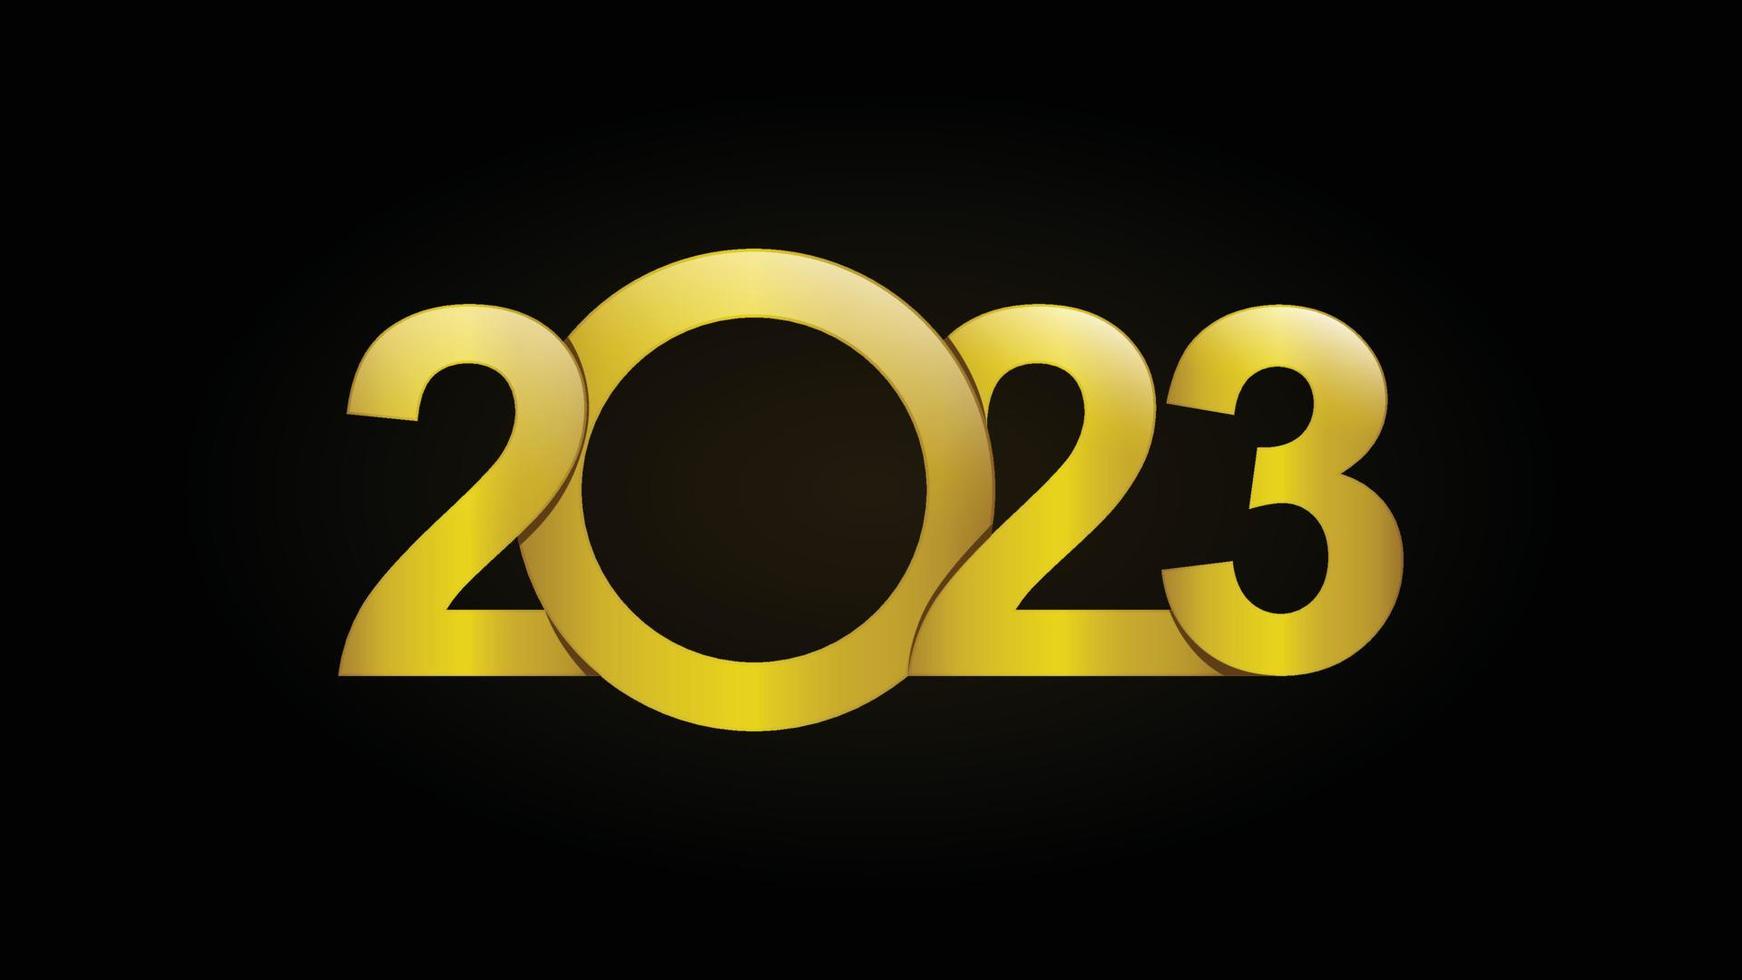 2023. feliz ano novo 2023. 2023 ilustração de design vetorial de texto. Design de plano de fundo de 2023 anos semelhante a saudações, cartões, modelos, banners ou sites. vetor